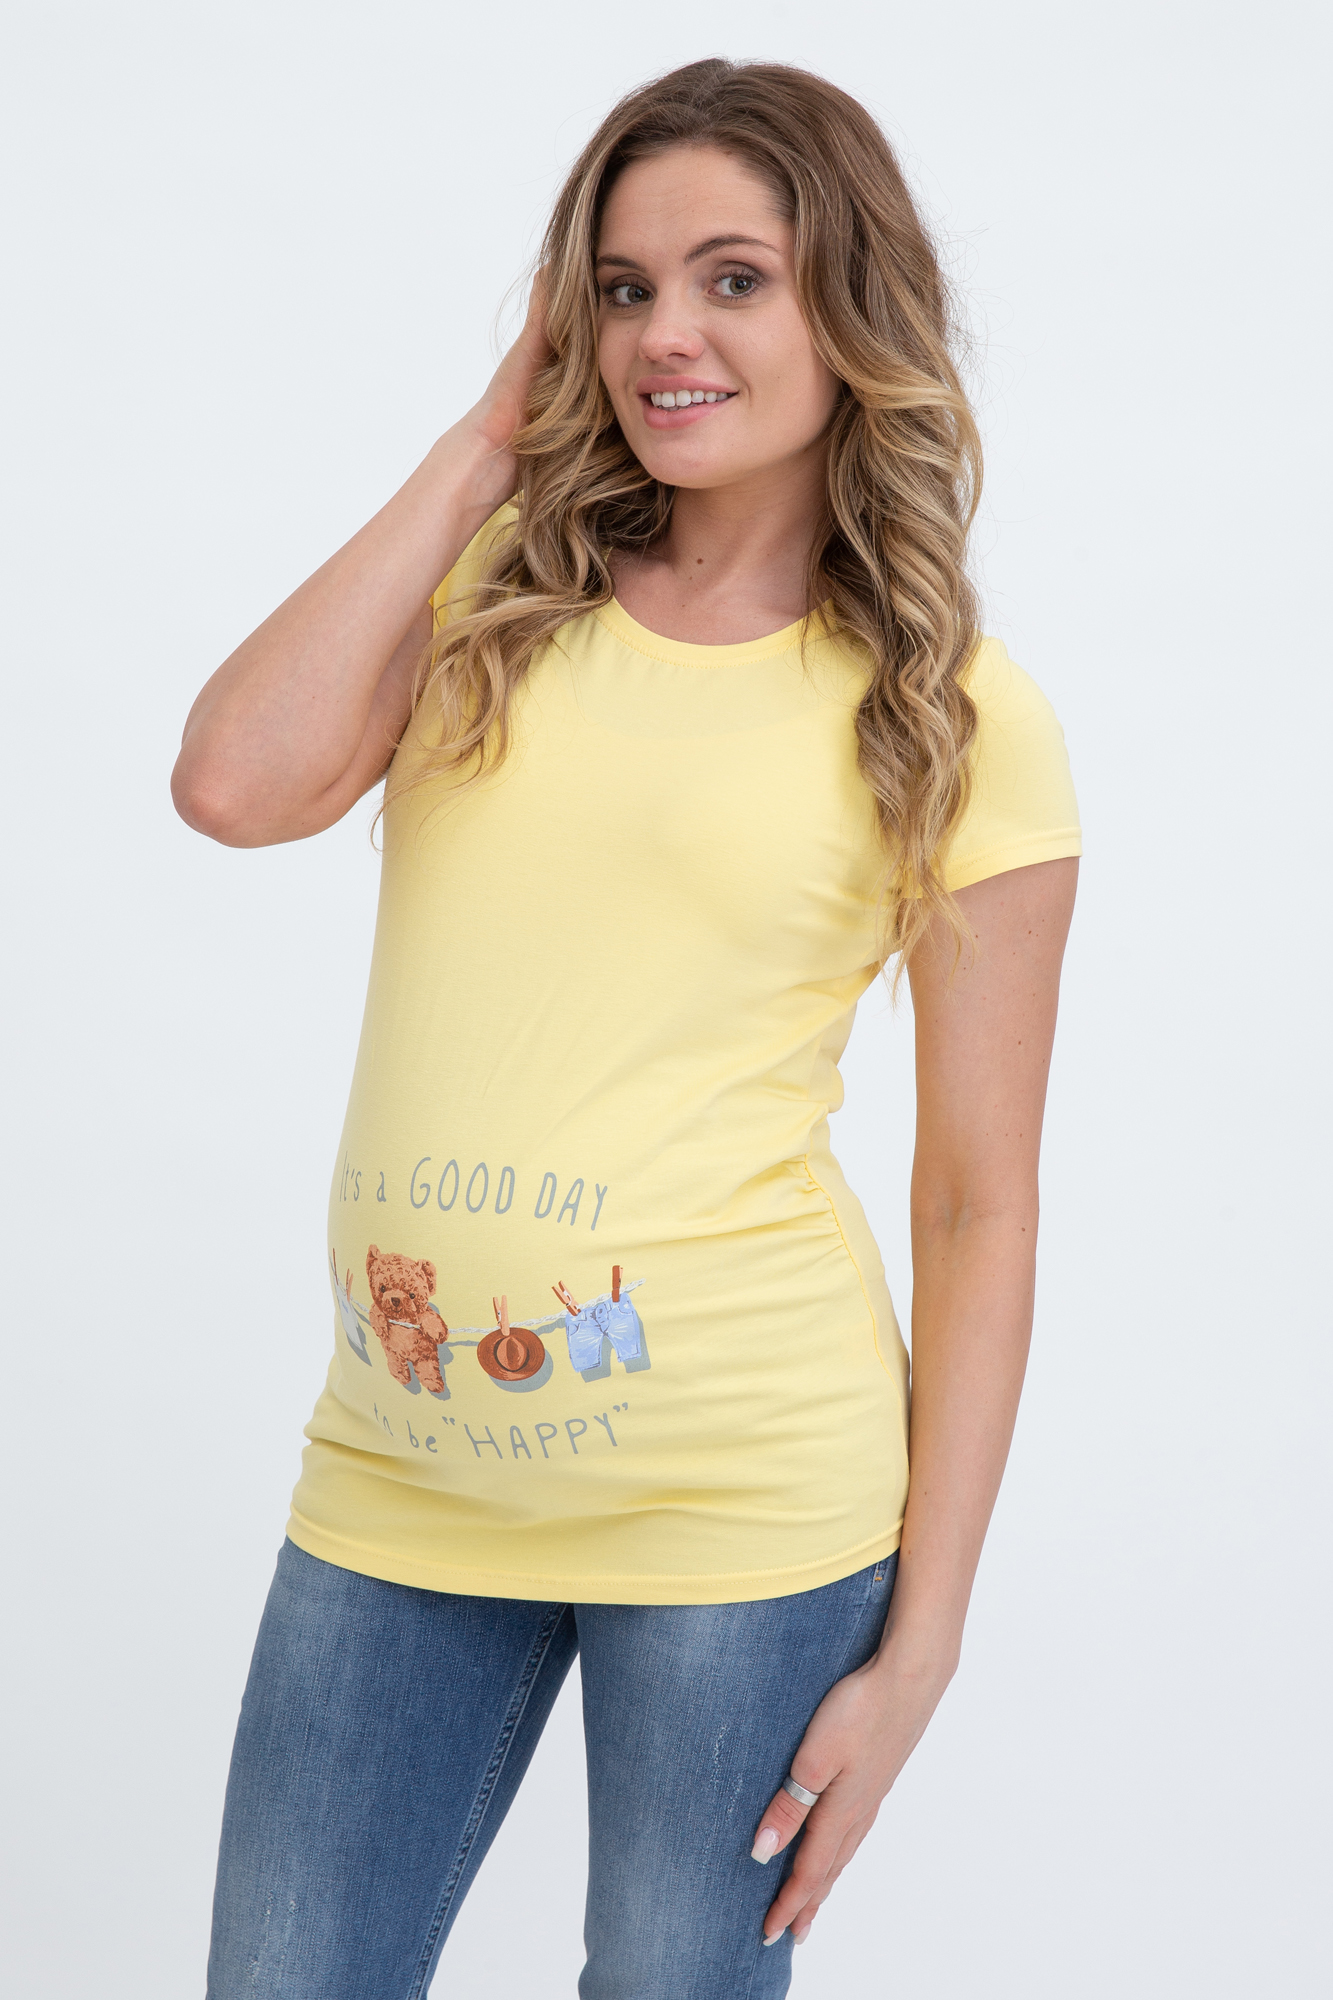 Футболка для беременных женская Magica bellezza МВ7001 желтая 54 RU